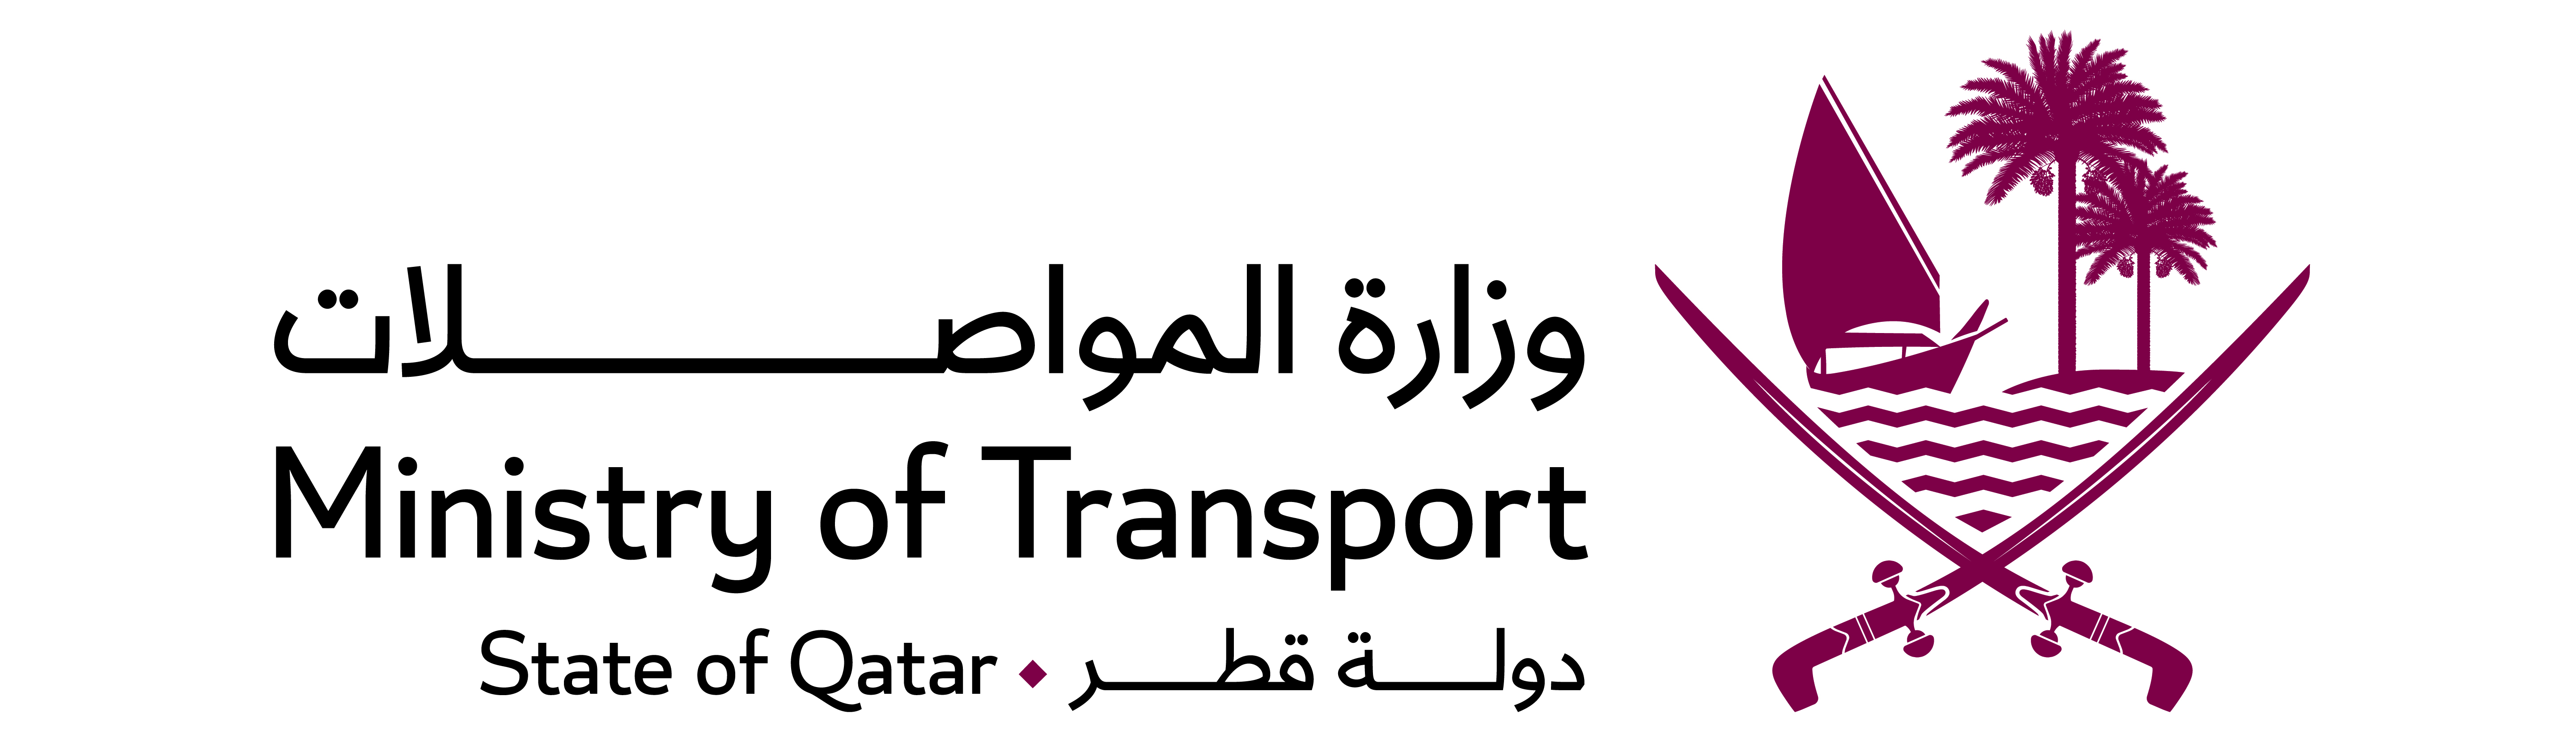 وزارة المواصلات تنهي إعداد الخطة الشاملة للشحن البري في دولة قطر